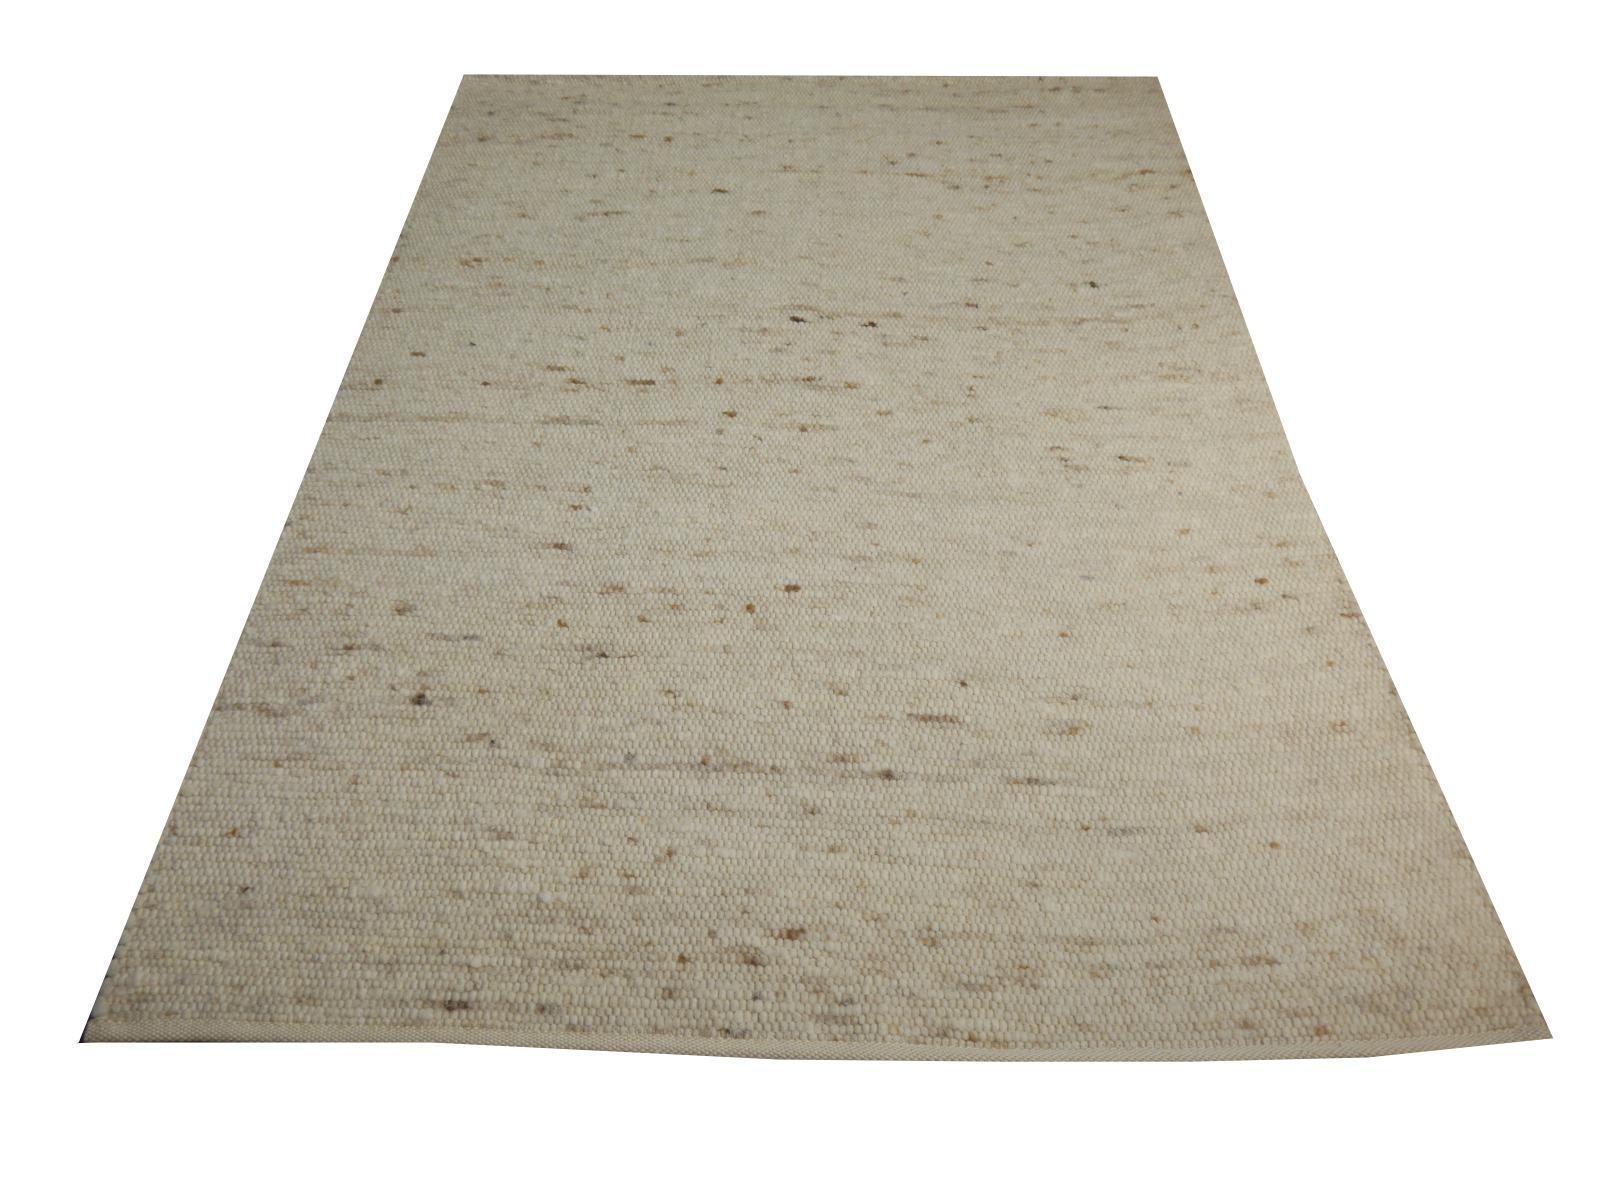 Europäischer Kelim-Teppich handgewebter Teppich
Rustikaler Beige-Kilim-Teppich Wolle flach handgewebt Europäischer Teppich von Djoharian Design
Marmor-Kilim-Teppiche werden in Europa/Ungarn hergestellt. In vielen Ländern zwischen Polen und dem